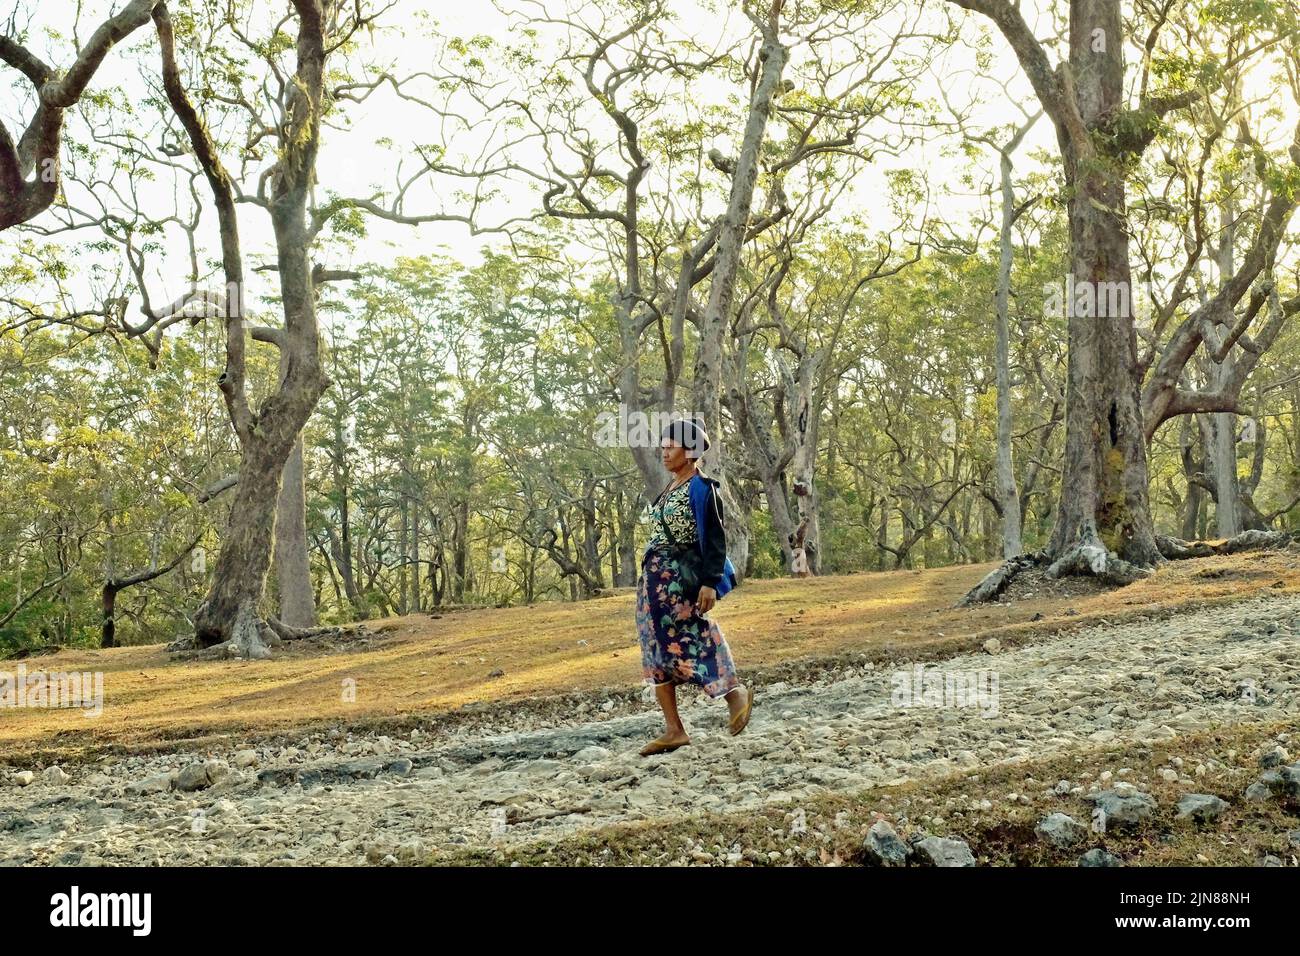 Yuliana Fuka, aldeana y guía de ecoturismo a tiempo parcial, camina por un camino rural entre el bosque cerca de la aldea de Fatumnasi en Timor Central del Sur, Nusa Tenggara del Este, Indonesia. Foto de stock